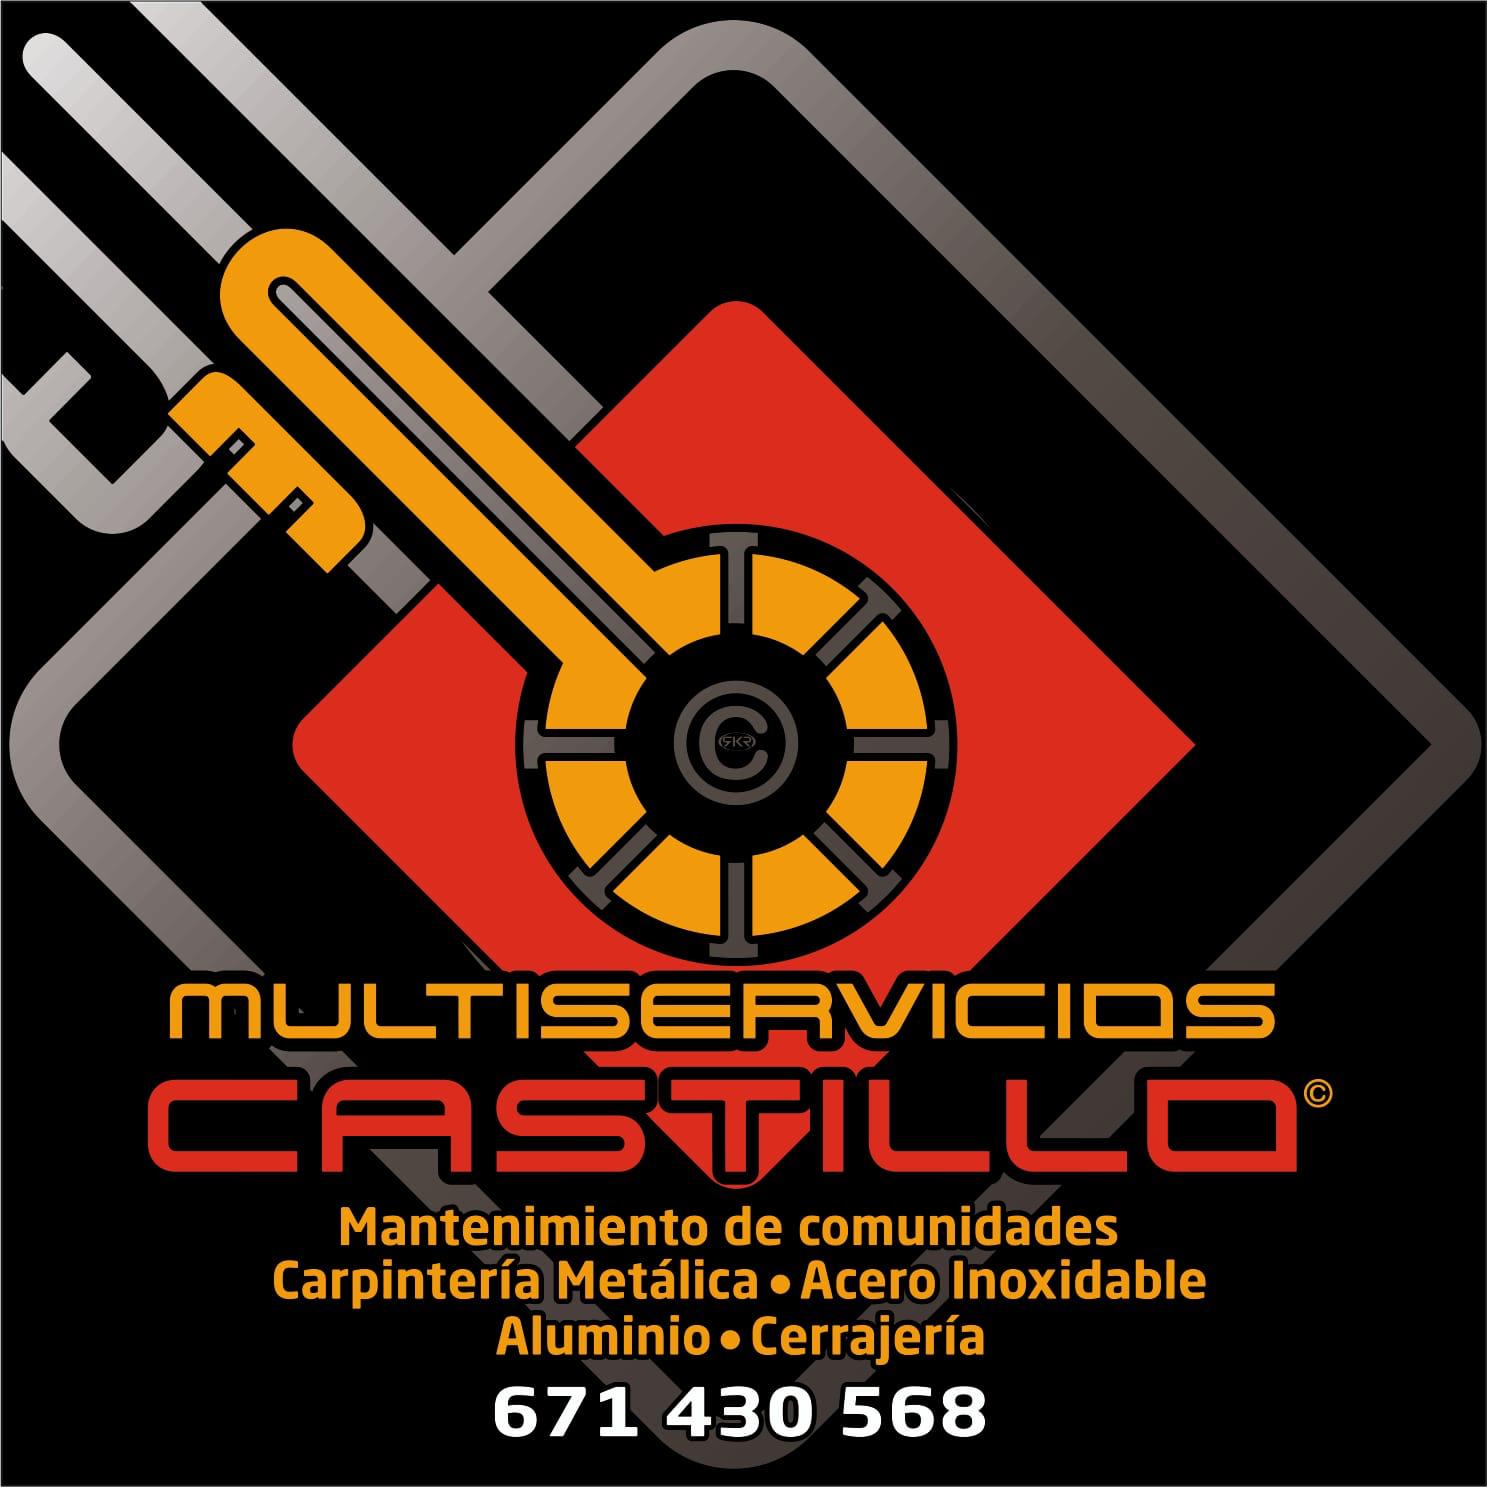 Cerrajeros en Linares Multiservicios Castillo 24 Horas 671430568